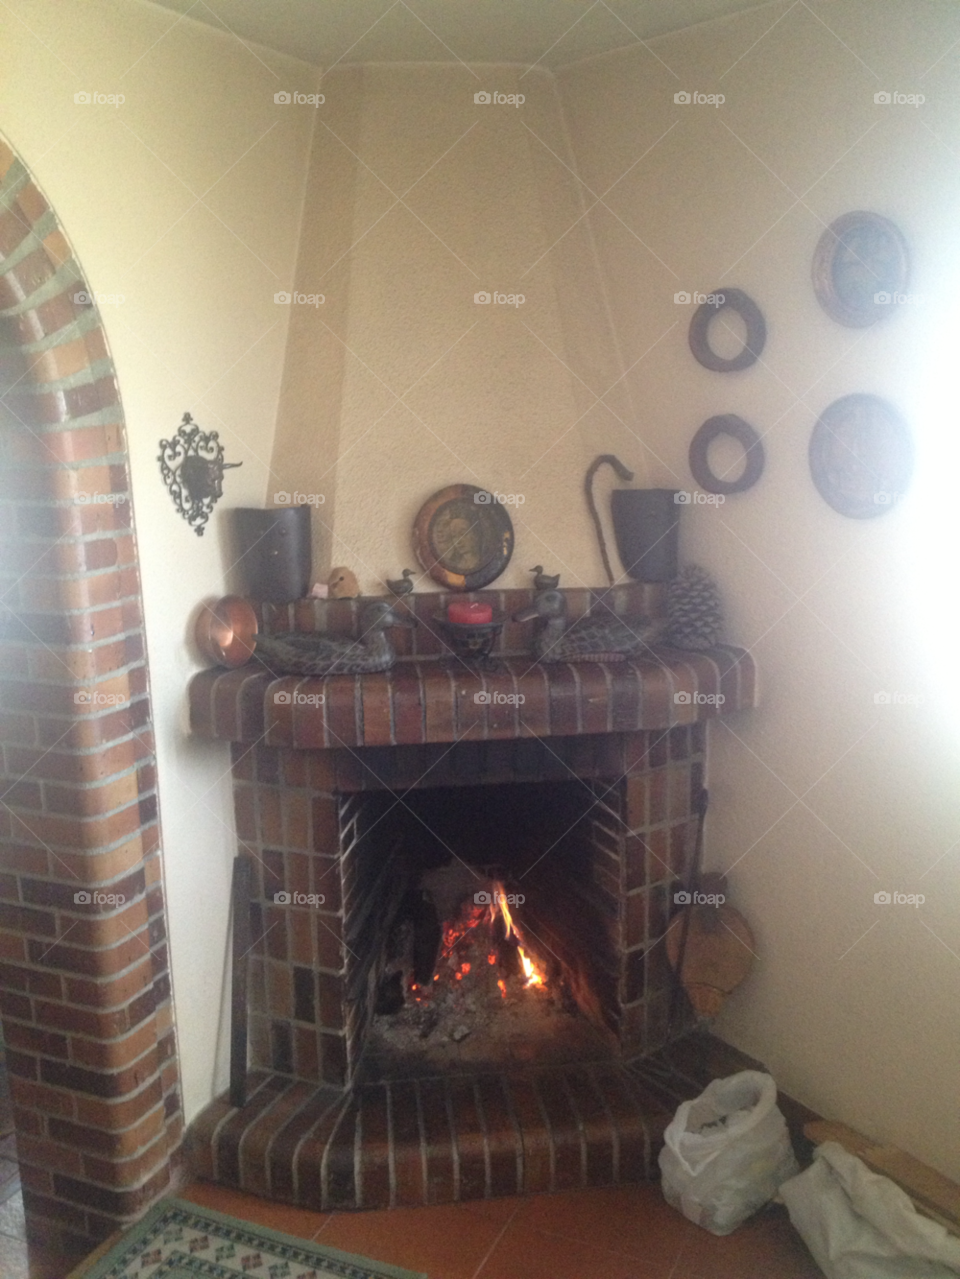 fire home fireplace segovia. spain by piedras84